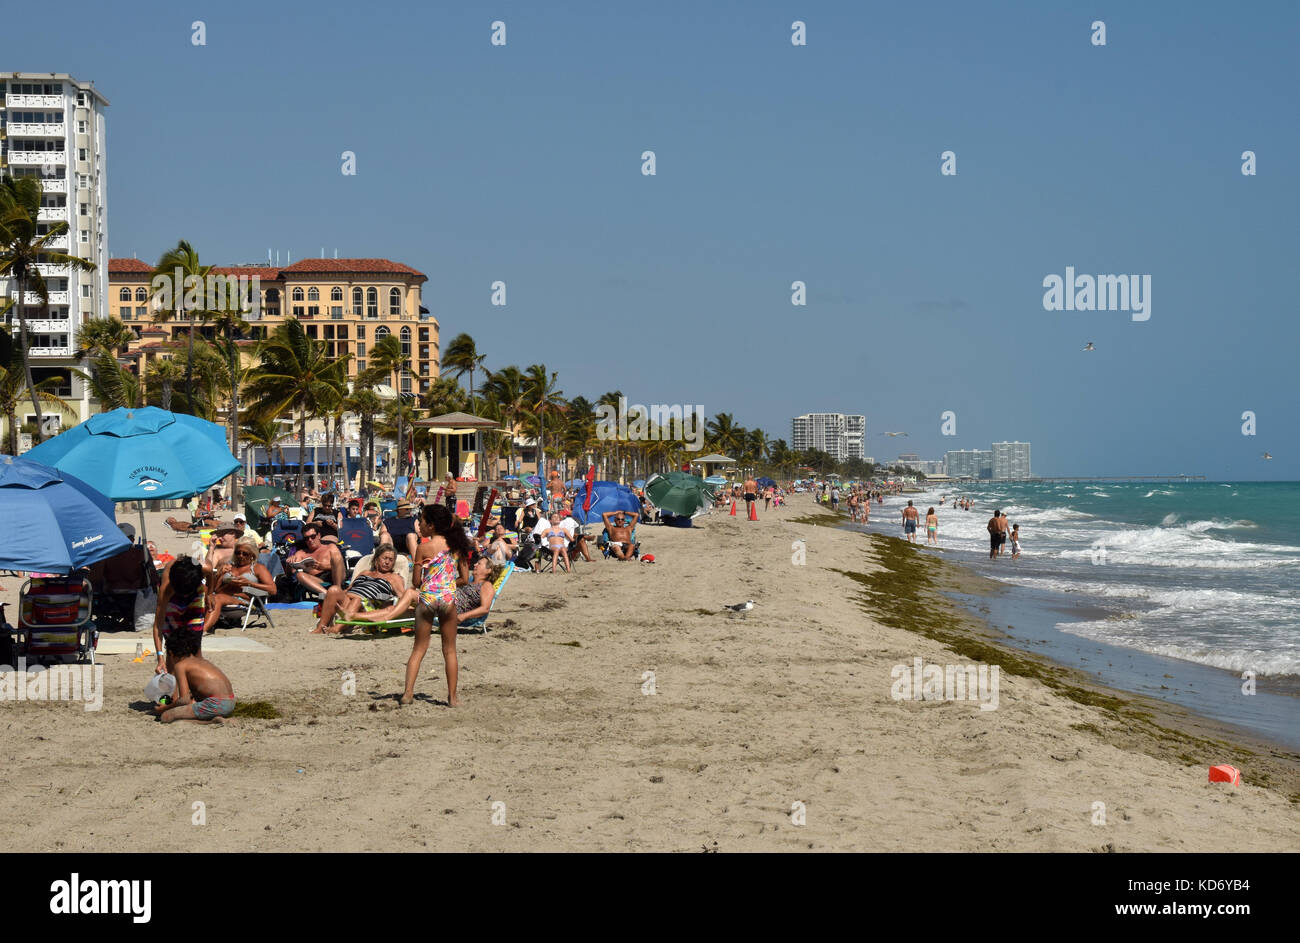 Hollywood, Stati Uniti d'America - februaary 22, 2015: escursionisti godere di una giornata di sole sulla spiaggia in Hollywood Florida il 22 febbraio 2015 Foto Stock